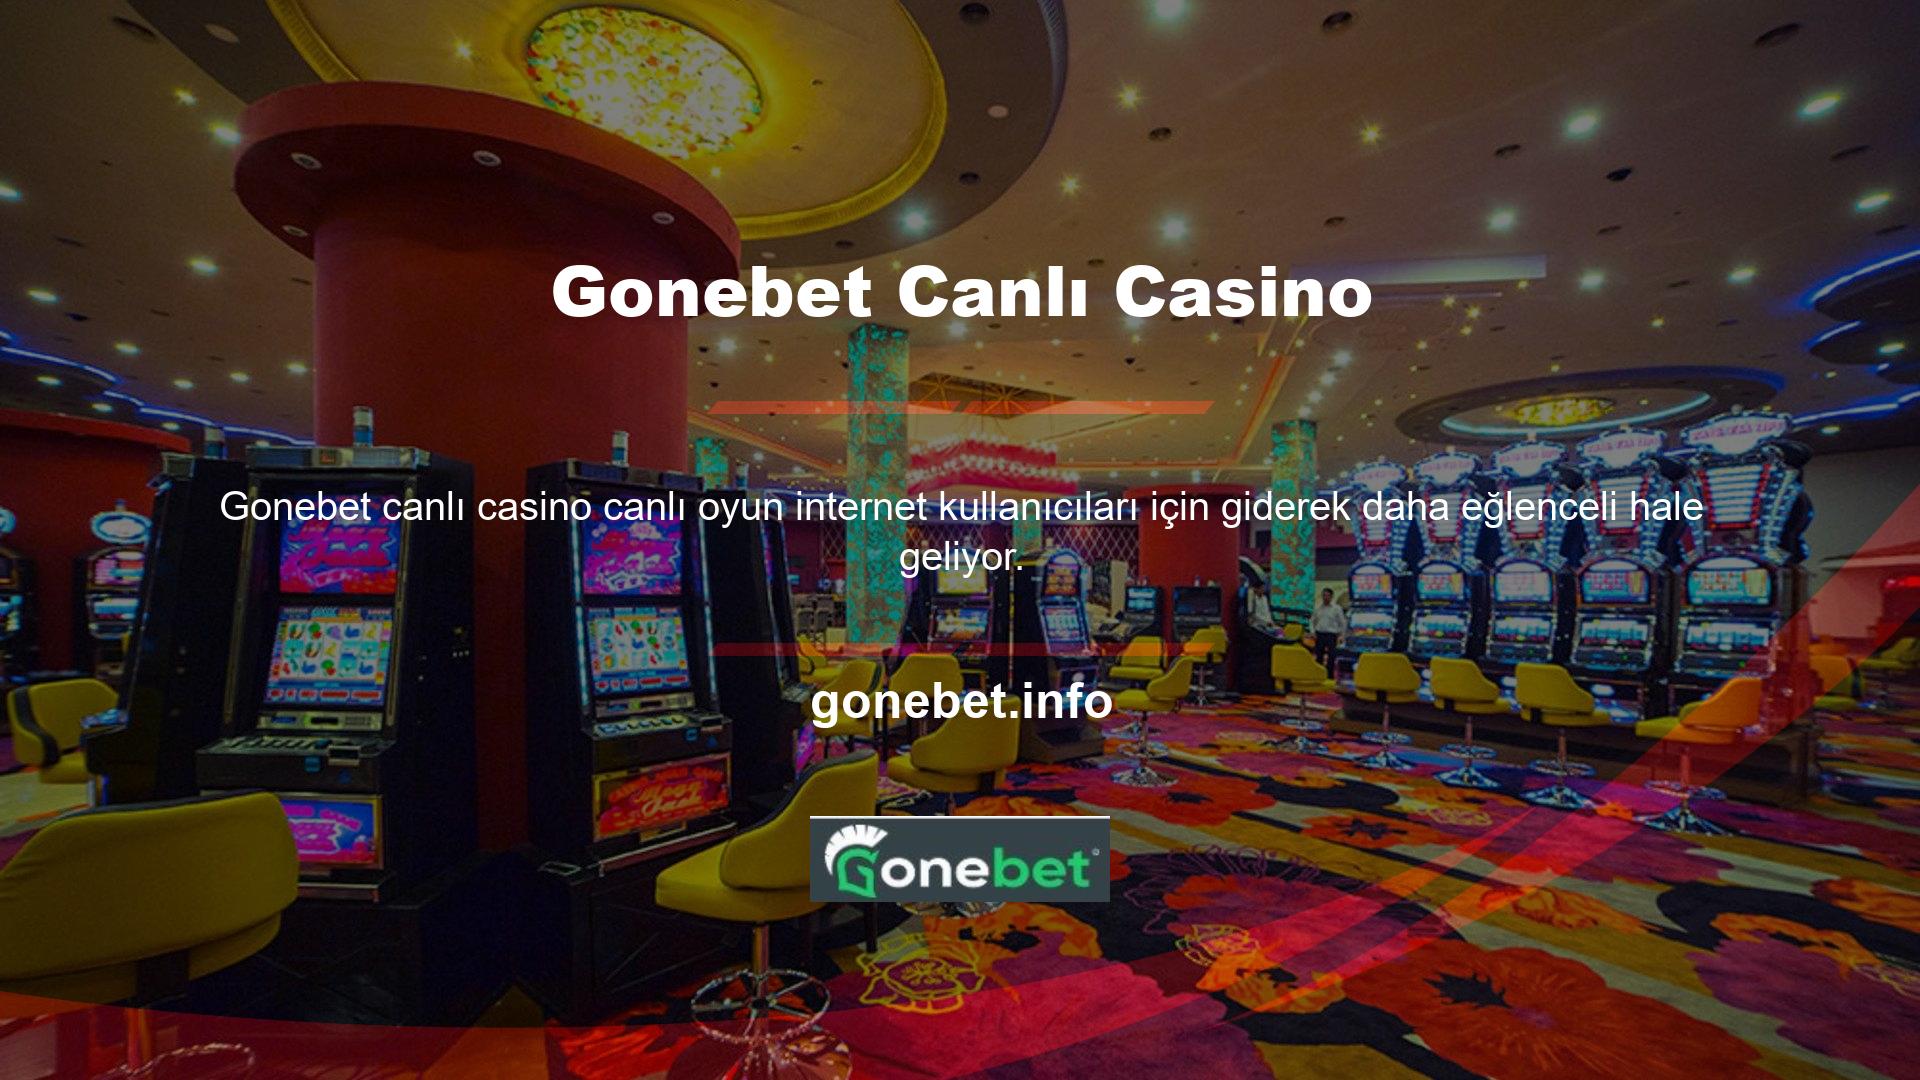 Gonebet canlı casino seçeneği de şu sıralar favori oyunlarımızdan biri